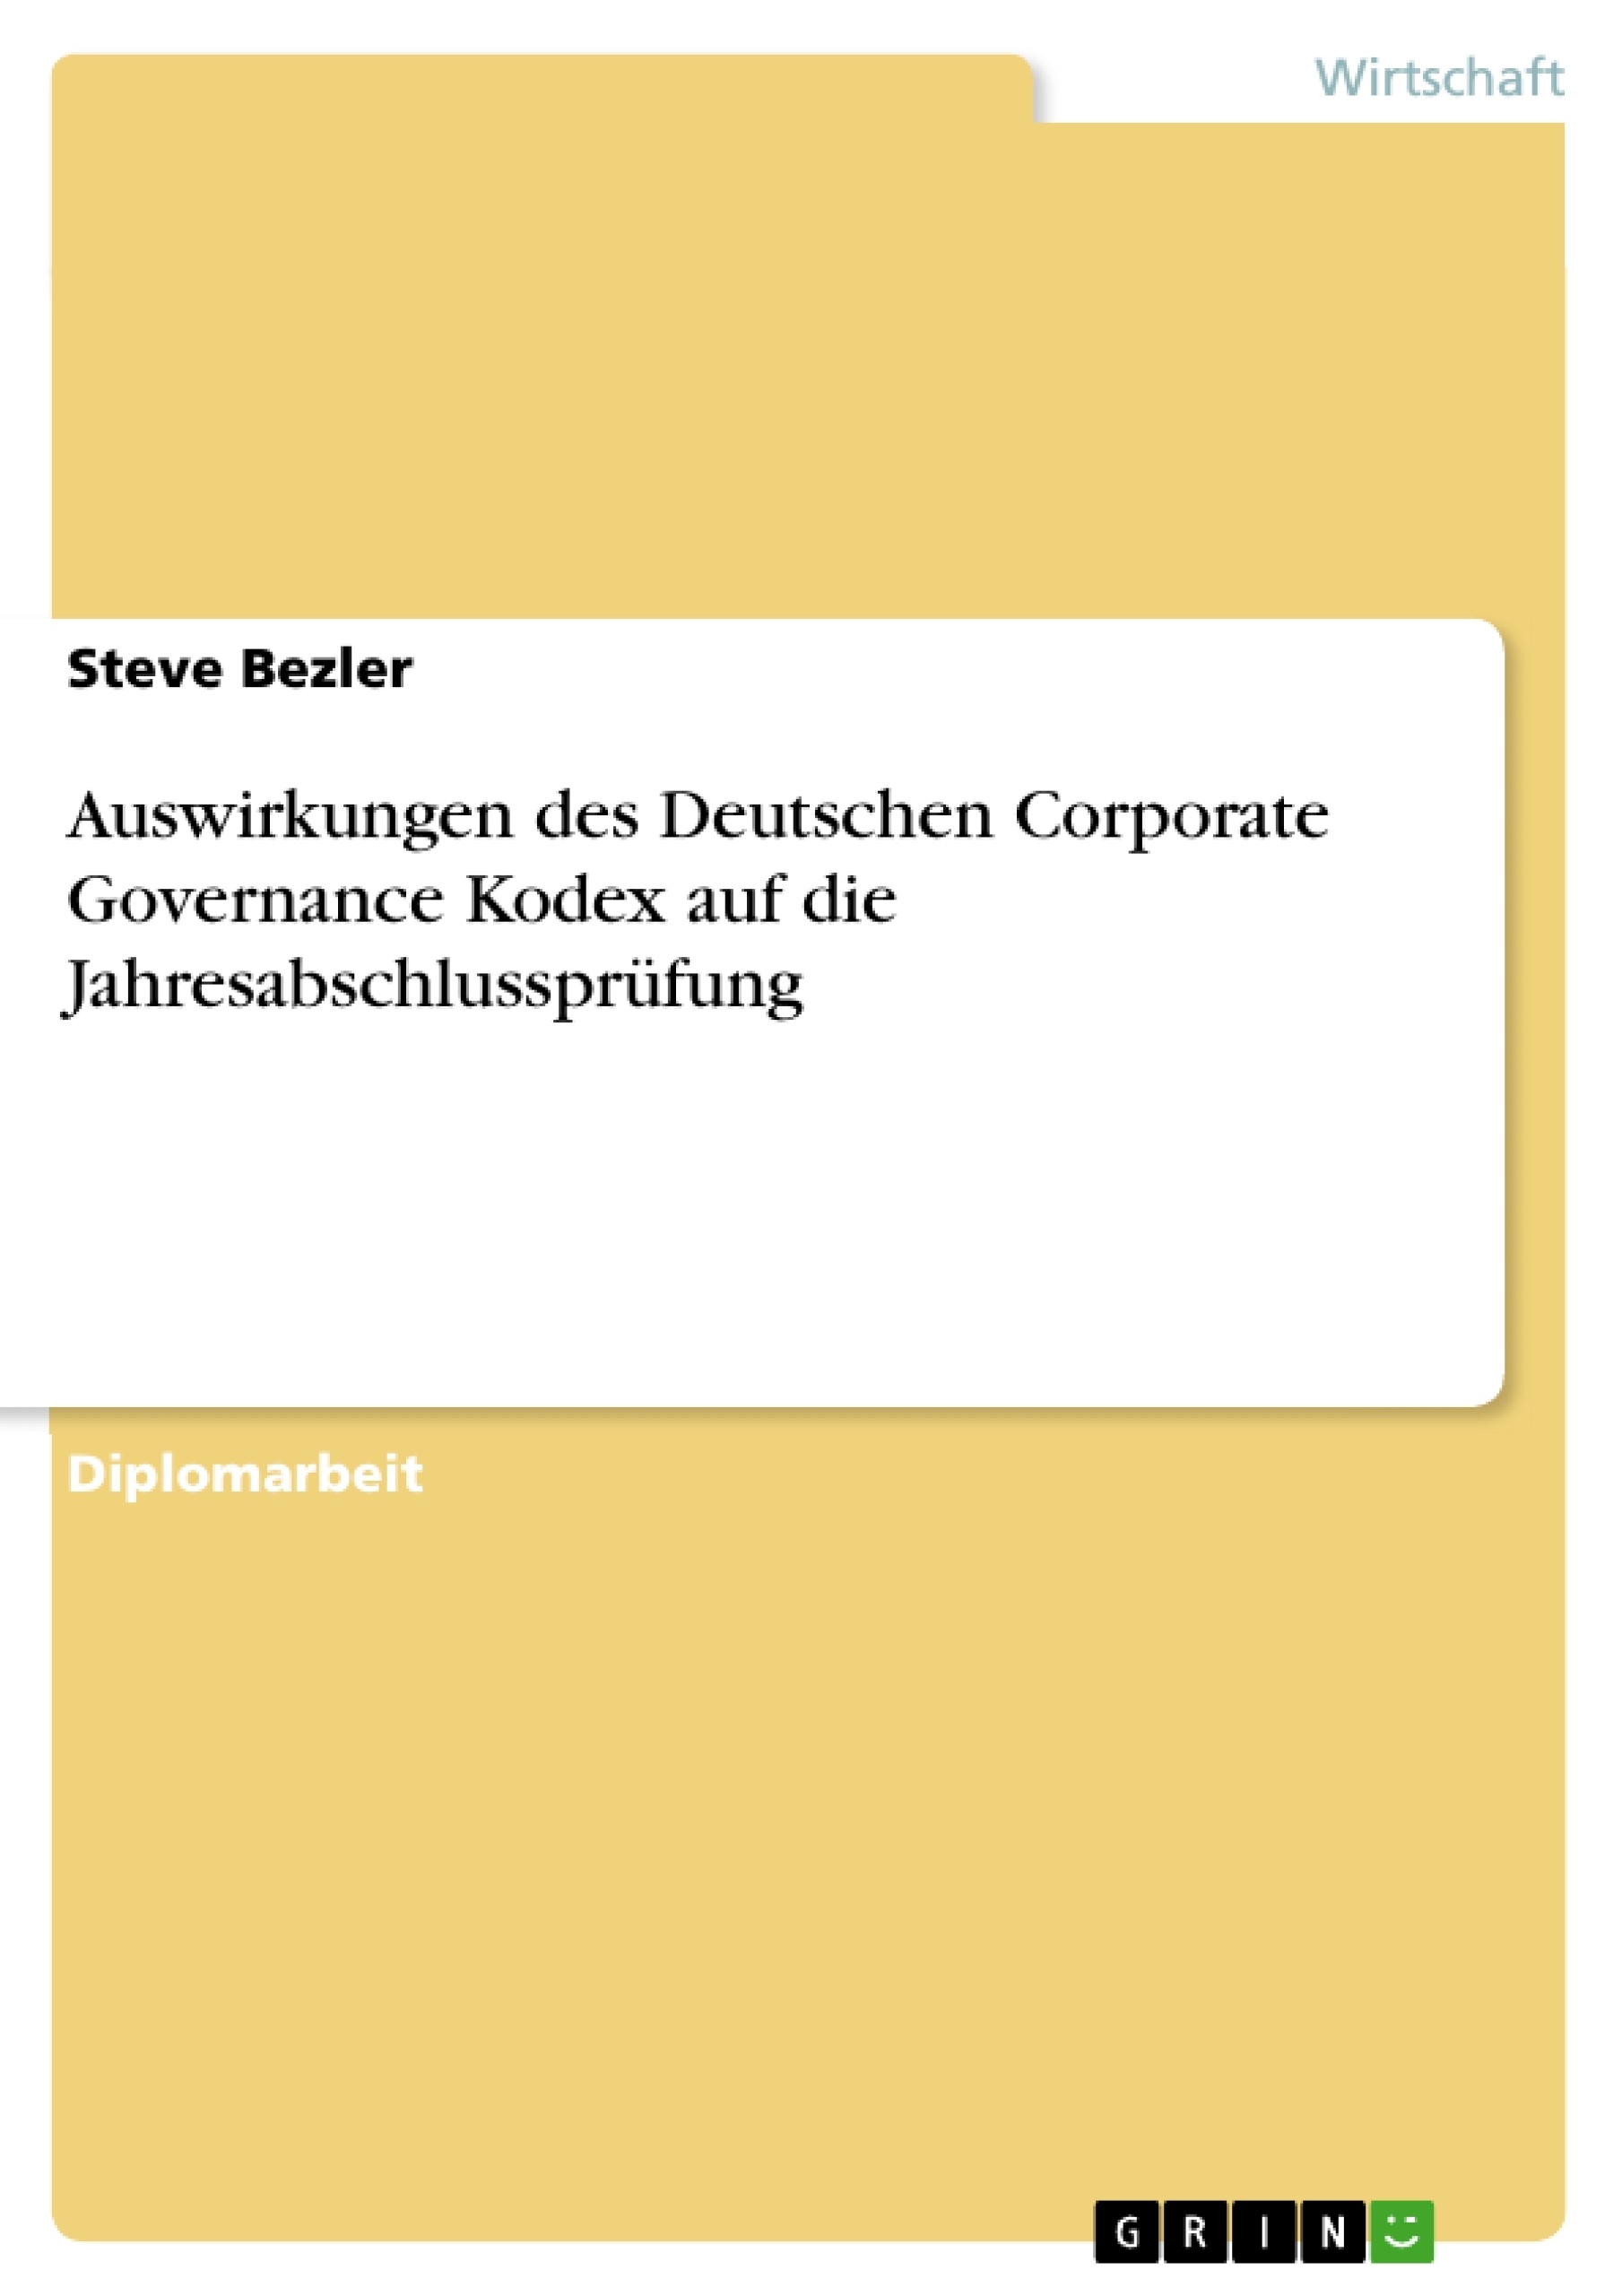 Título: Auswirkungen des Deutschen Corporate Governance Kodex auf die Jahresabschlussprüfung